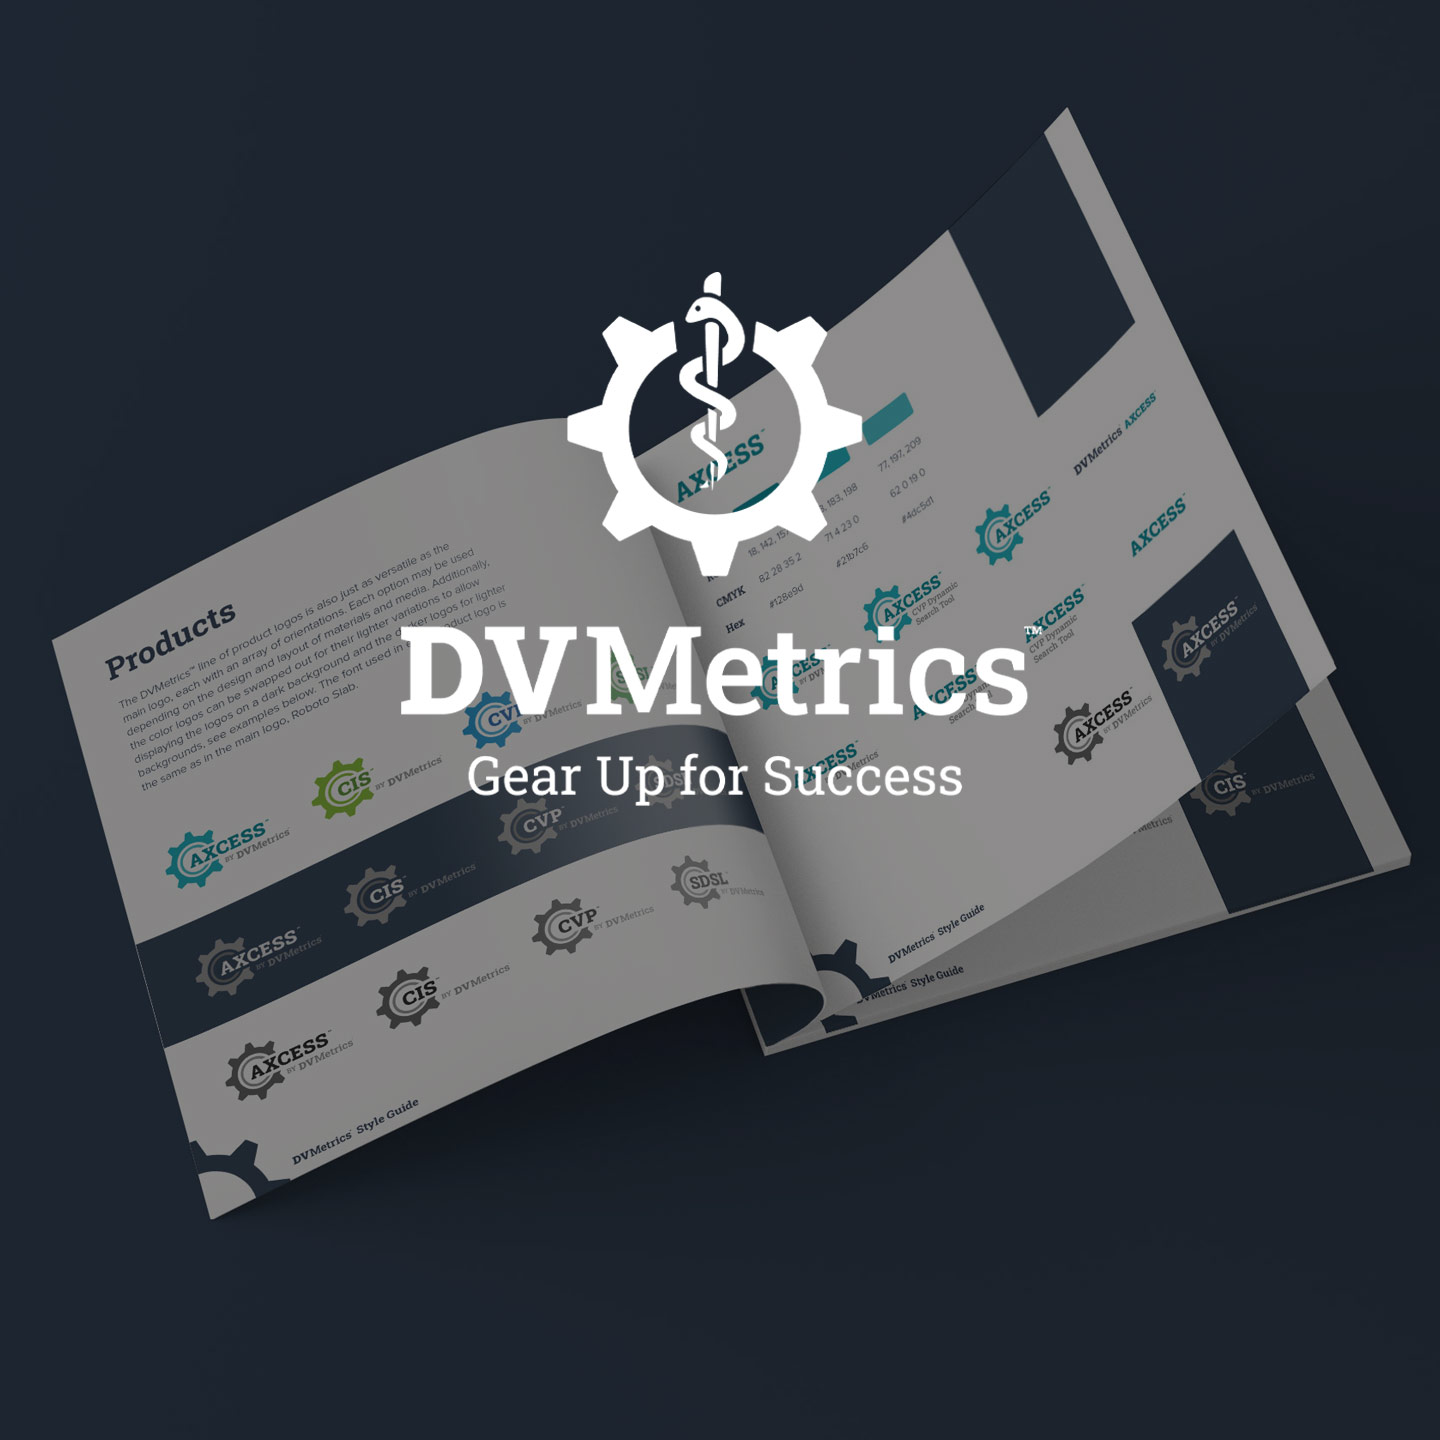 DV Metrics